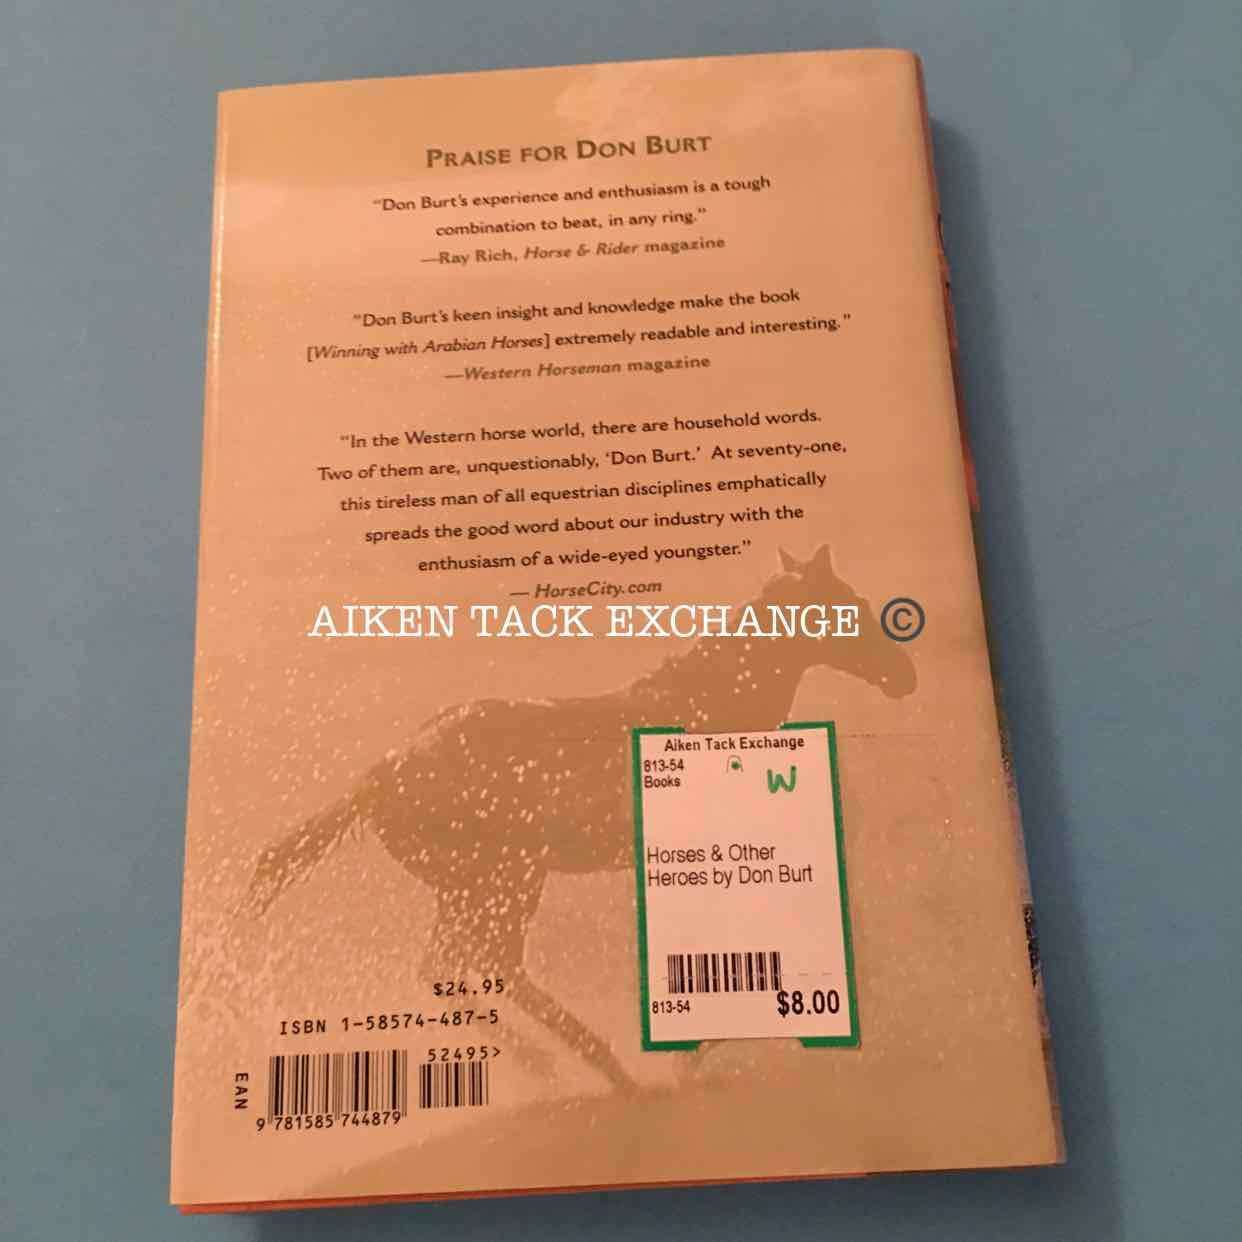 Horses & Other Heroes by Don Burt:Books:Aiken Tack Exchange:The Aiken Tack Exchange